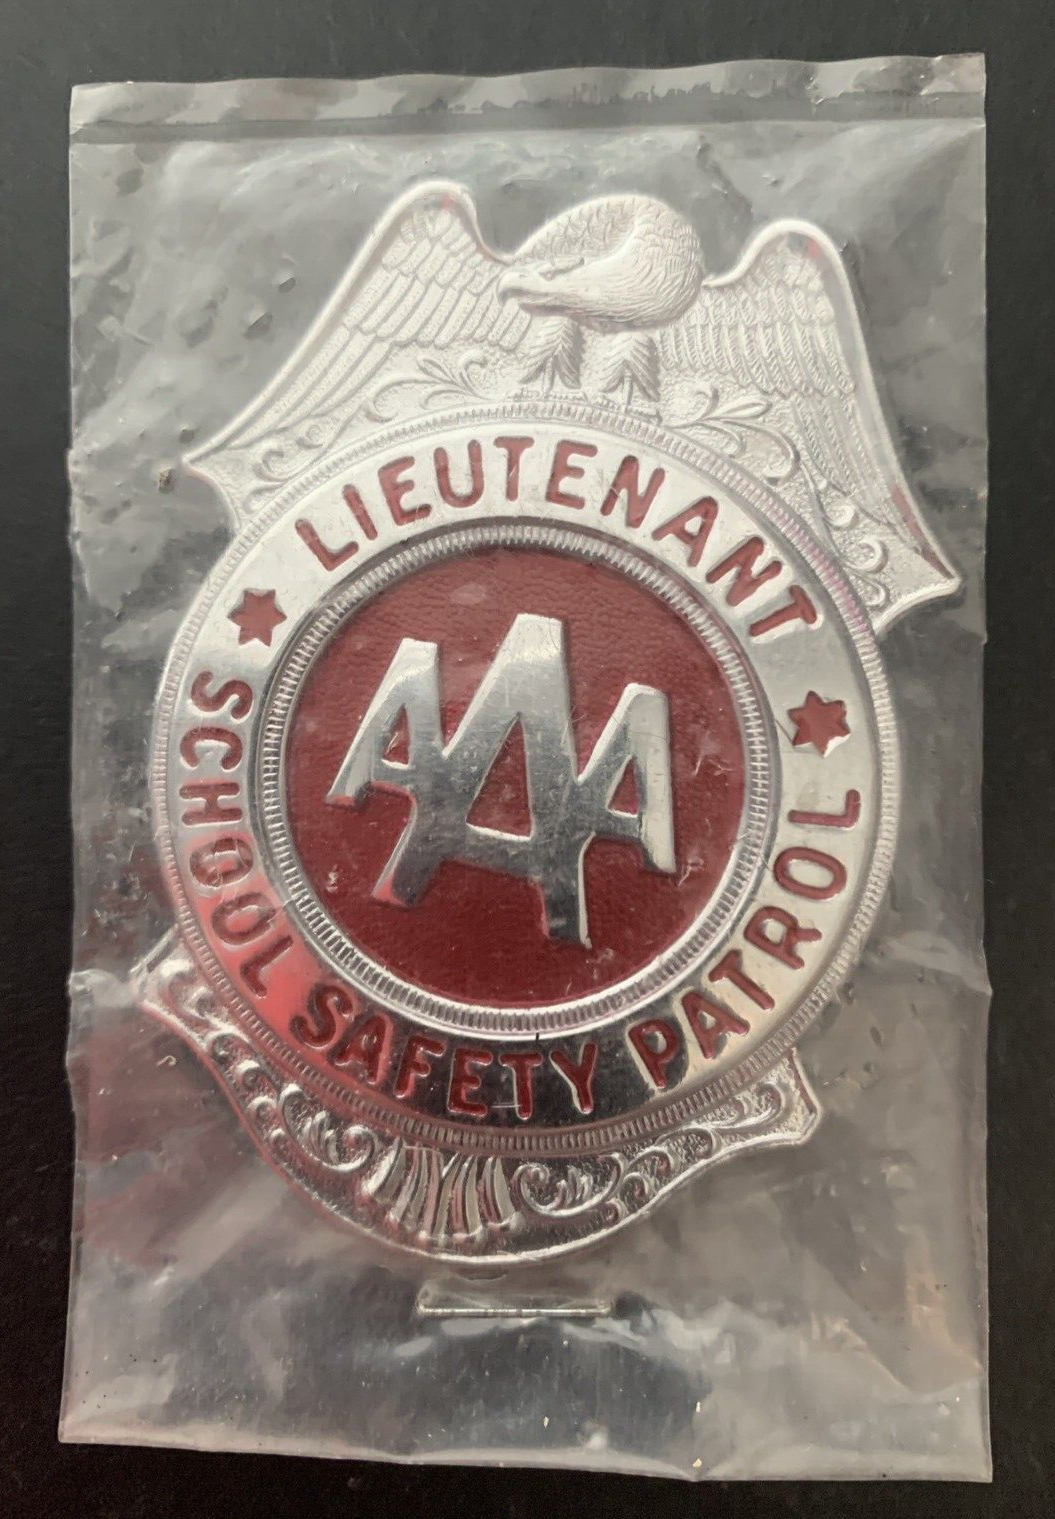 Vintage AAA Lieutenant School Safety Patrol Badge Pin Metal Silver & Red